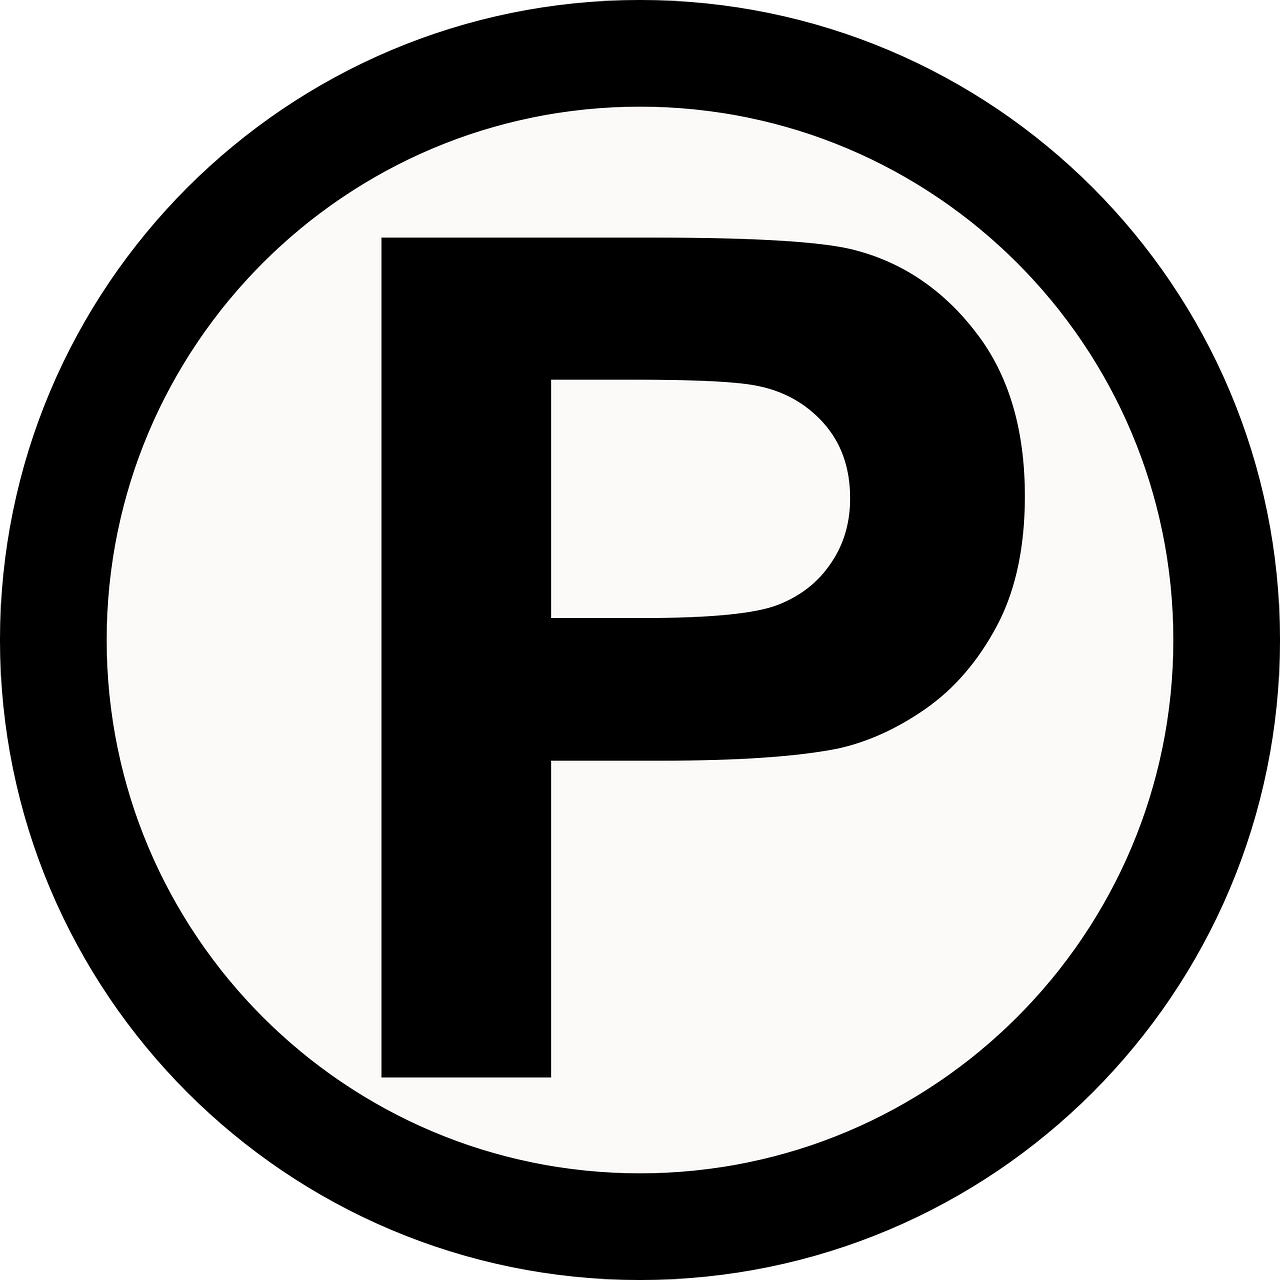 parking symbol circle free photo